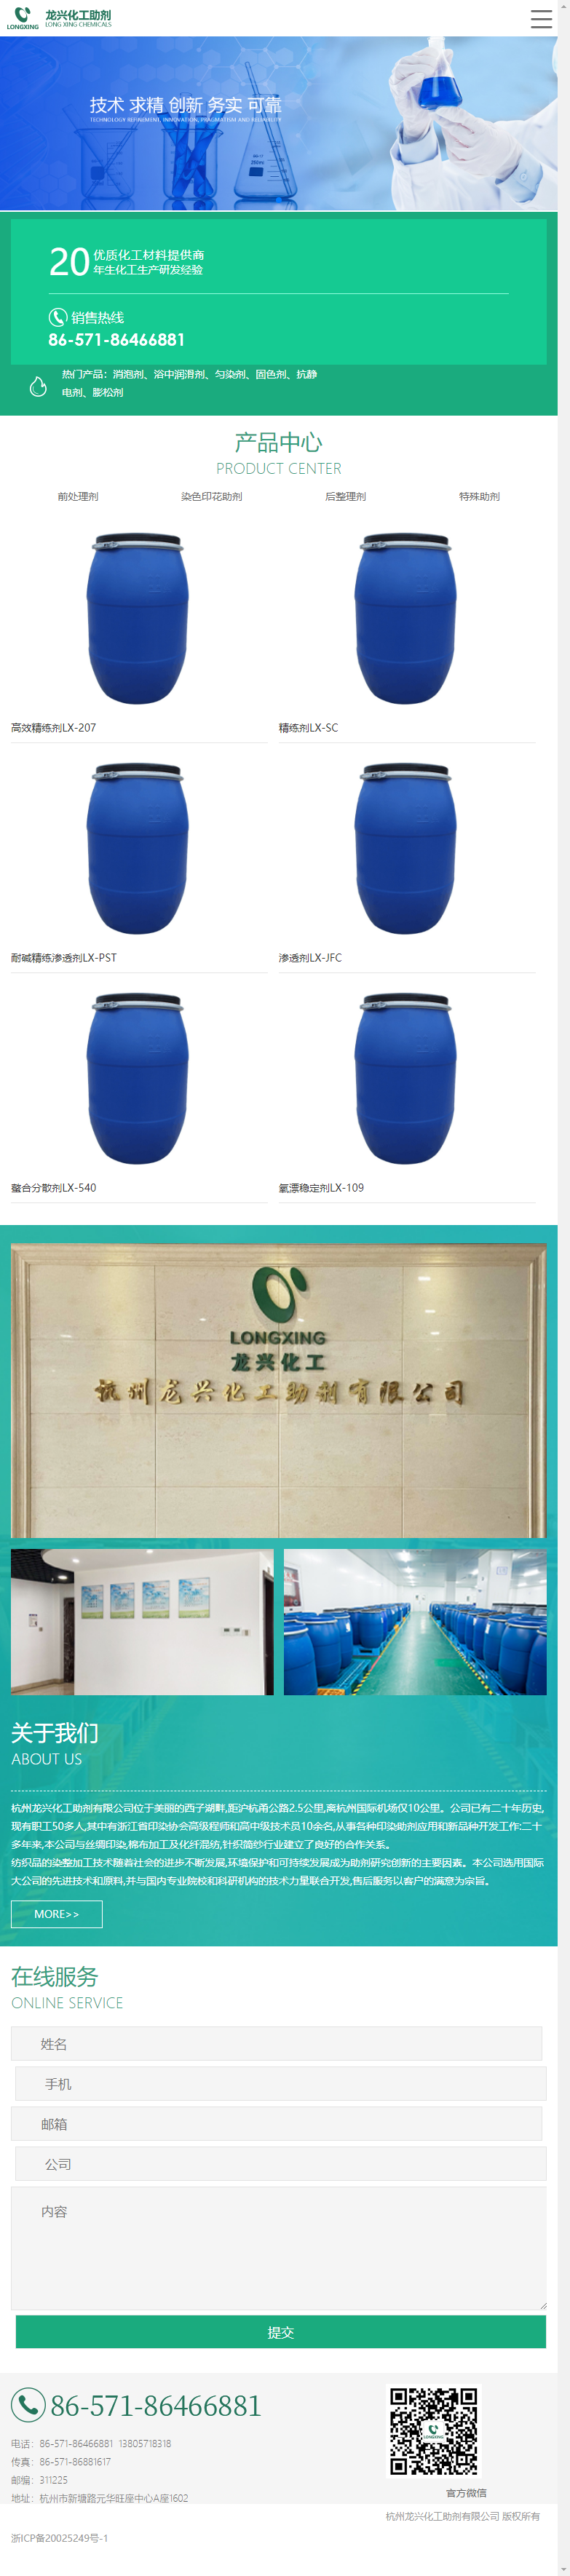 杭州龙兴化工助剂有限公司网站案例